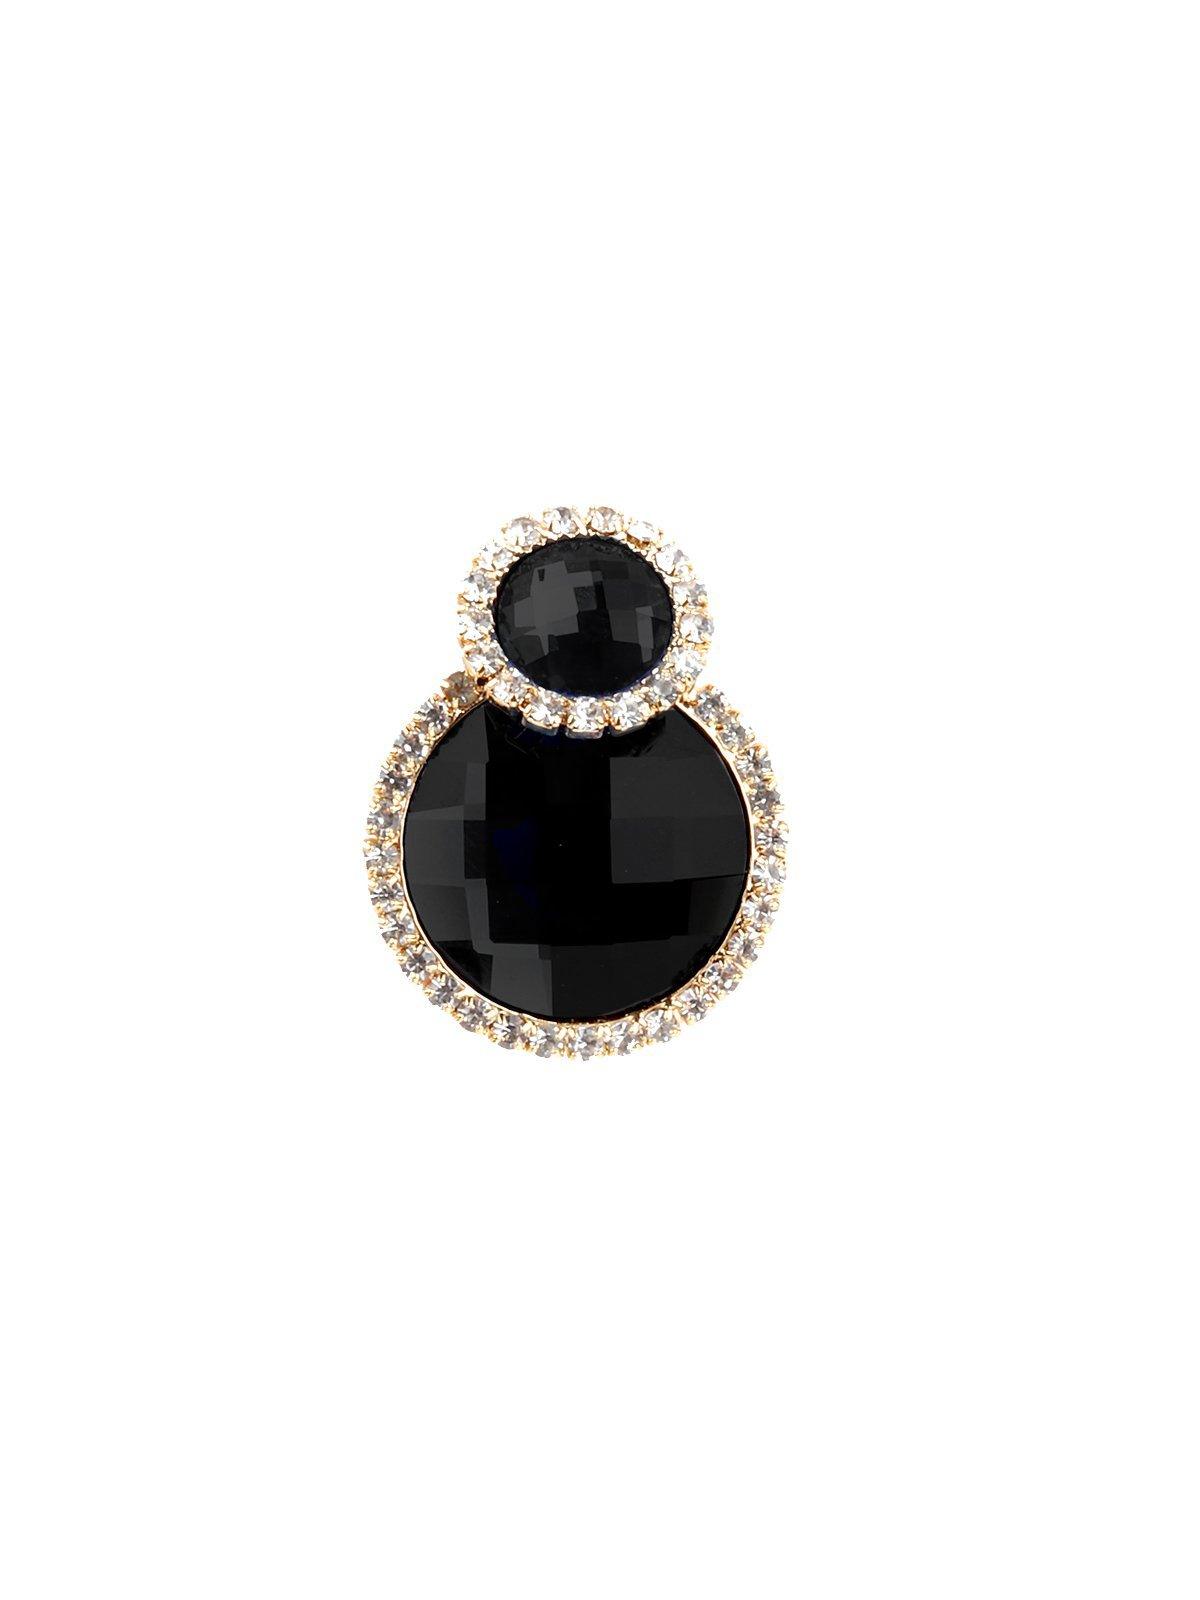 Women's Round Black Crystal Stud Earrings - Odette